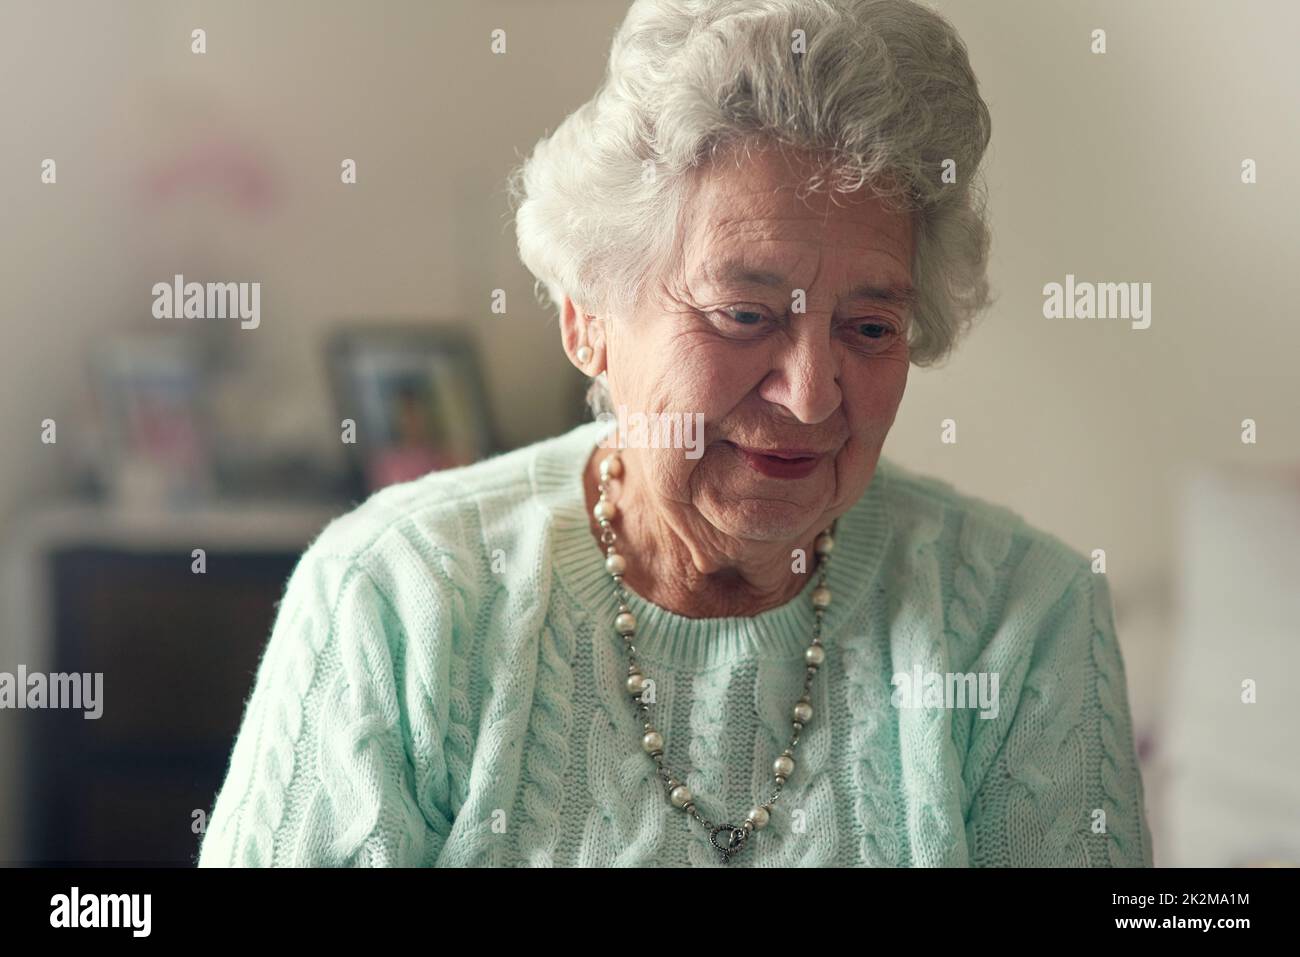 Ses brille encore de positivité même dans ses années d'or. Photo courte d'une femme âgée dans une maison de vieillesse. Banque D'Images